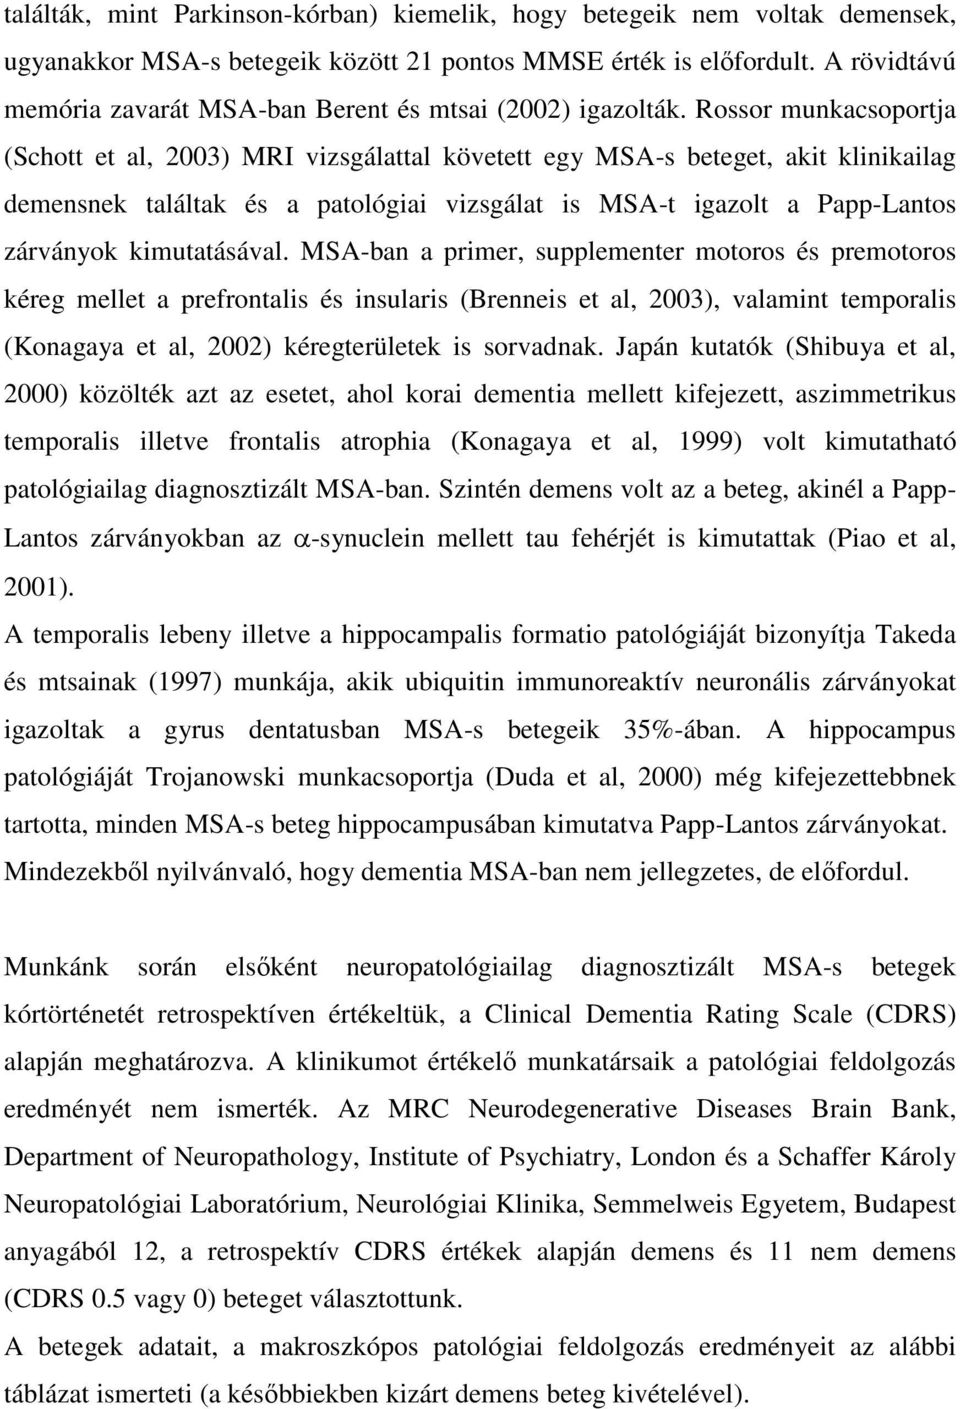 Rossor munkacsoportja (Schott et al, 2003) MRI vizsgálattal követett egy MSA-s beteget, akit klinikailag demensnek találtak és a patológiai vizsgálat is MSA-t igazolt a Papp-Lantos zárványok